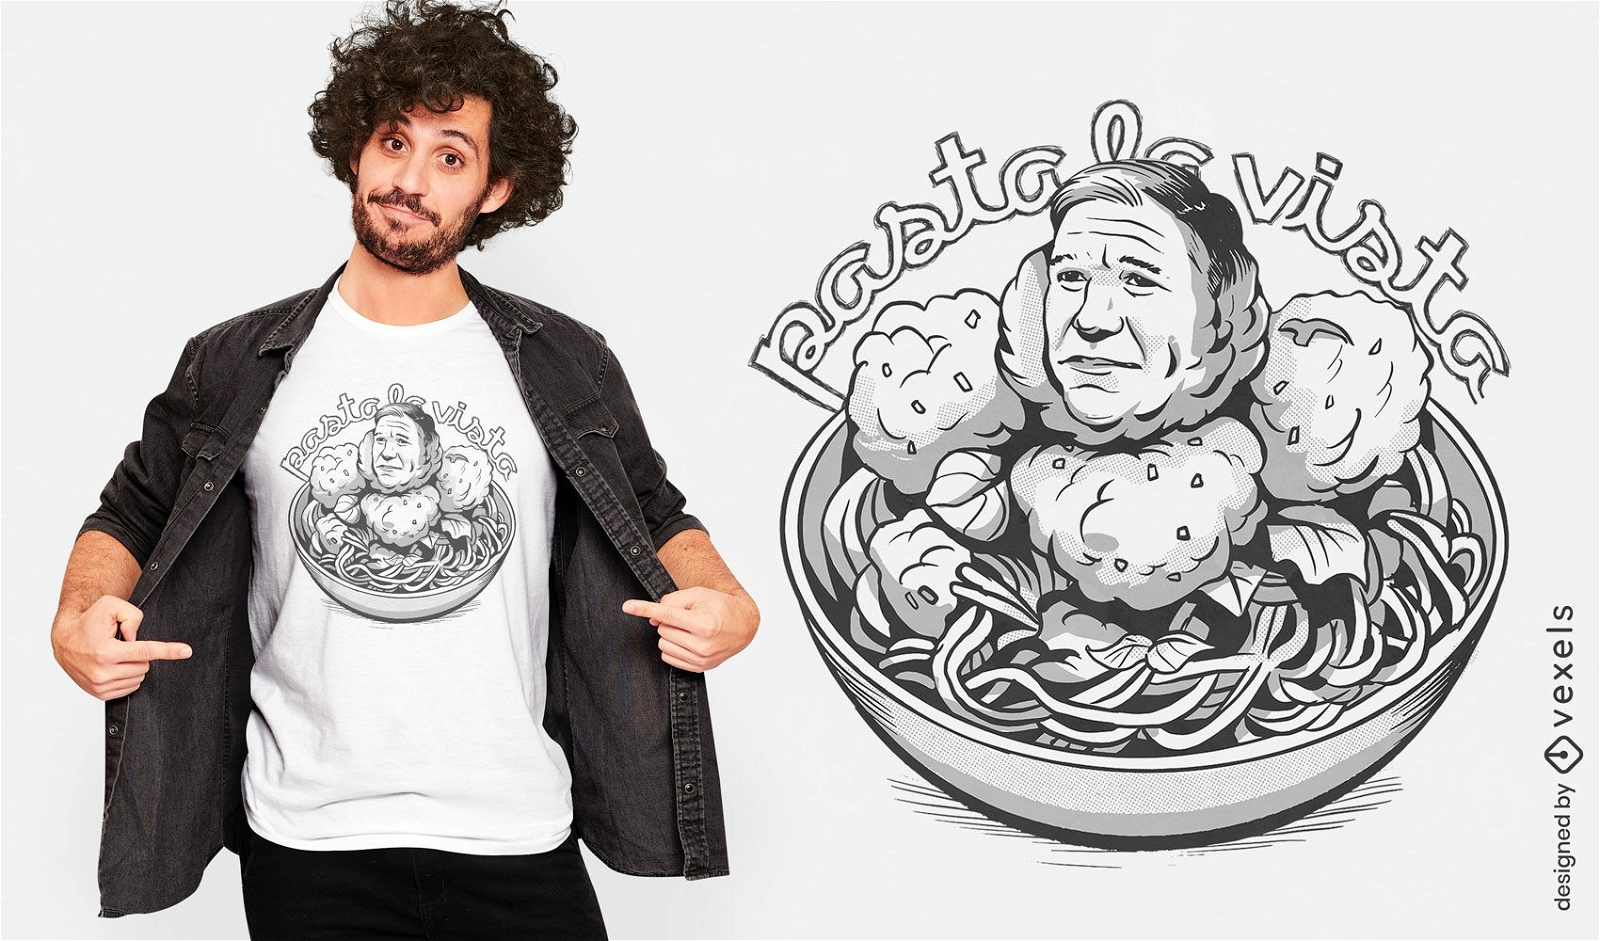 Satirisches politisches Spaghetti-T-Shirt-Design